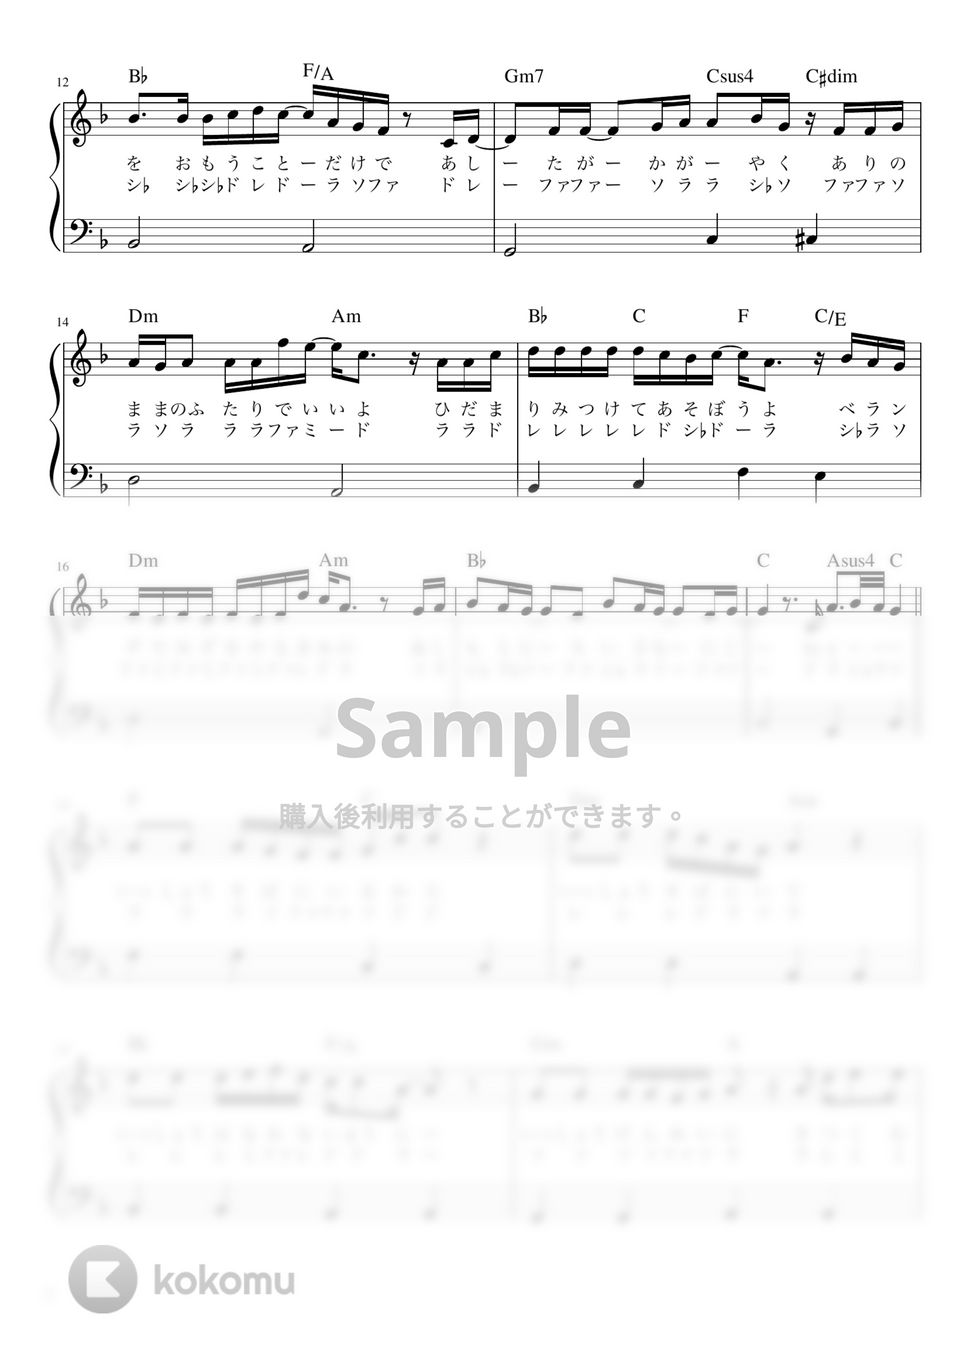 菅田 将暉 - 虹 (ピアノ かんたん 歌詞付き ドレミ付き 初心者) by piano.tokyo